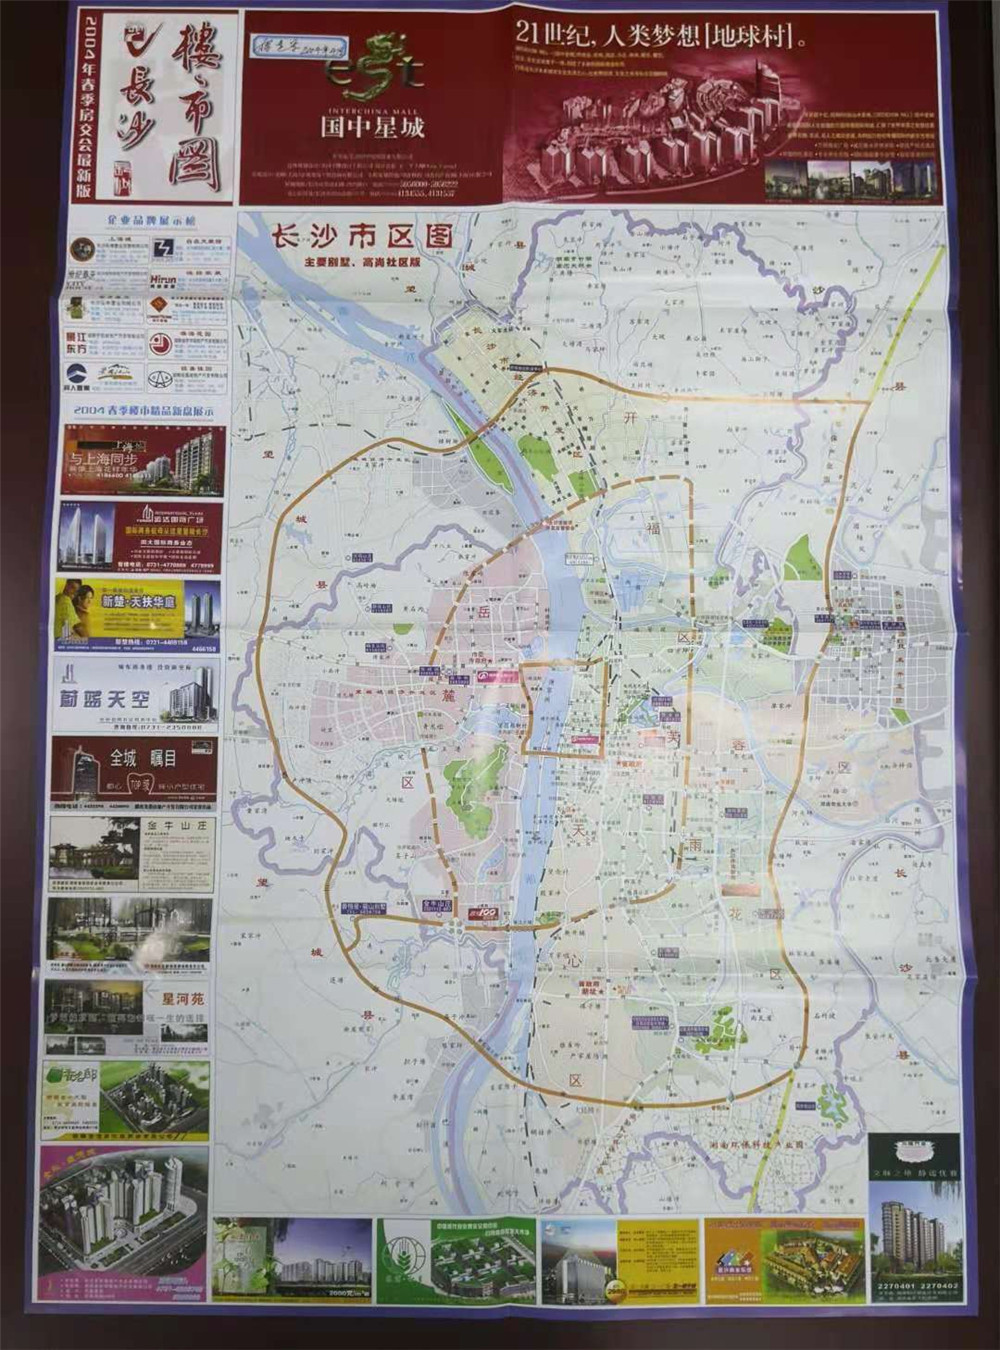 2004年，这一系列地图正式更名为《长沙楼市图》，双面印刷。这一期地图的楼盘广告已经明显增多了，纳入市区图的范围已扩大至二环周边。